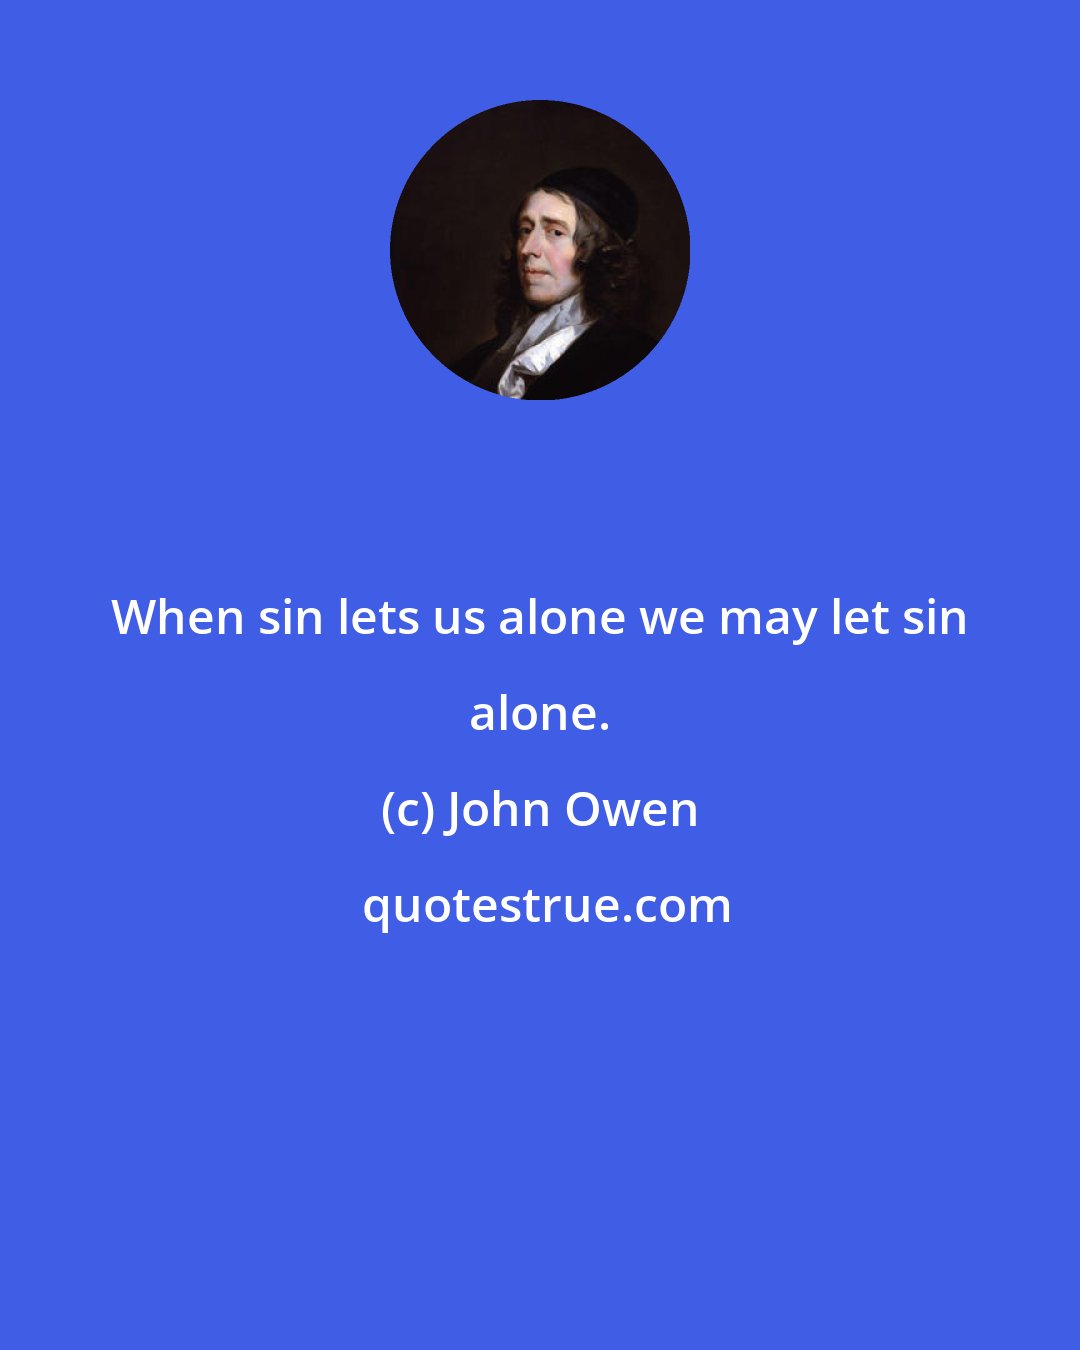 John Owen: When sin lets us alone we may let sin alone.